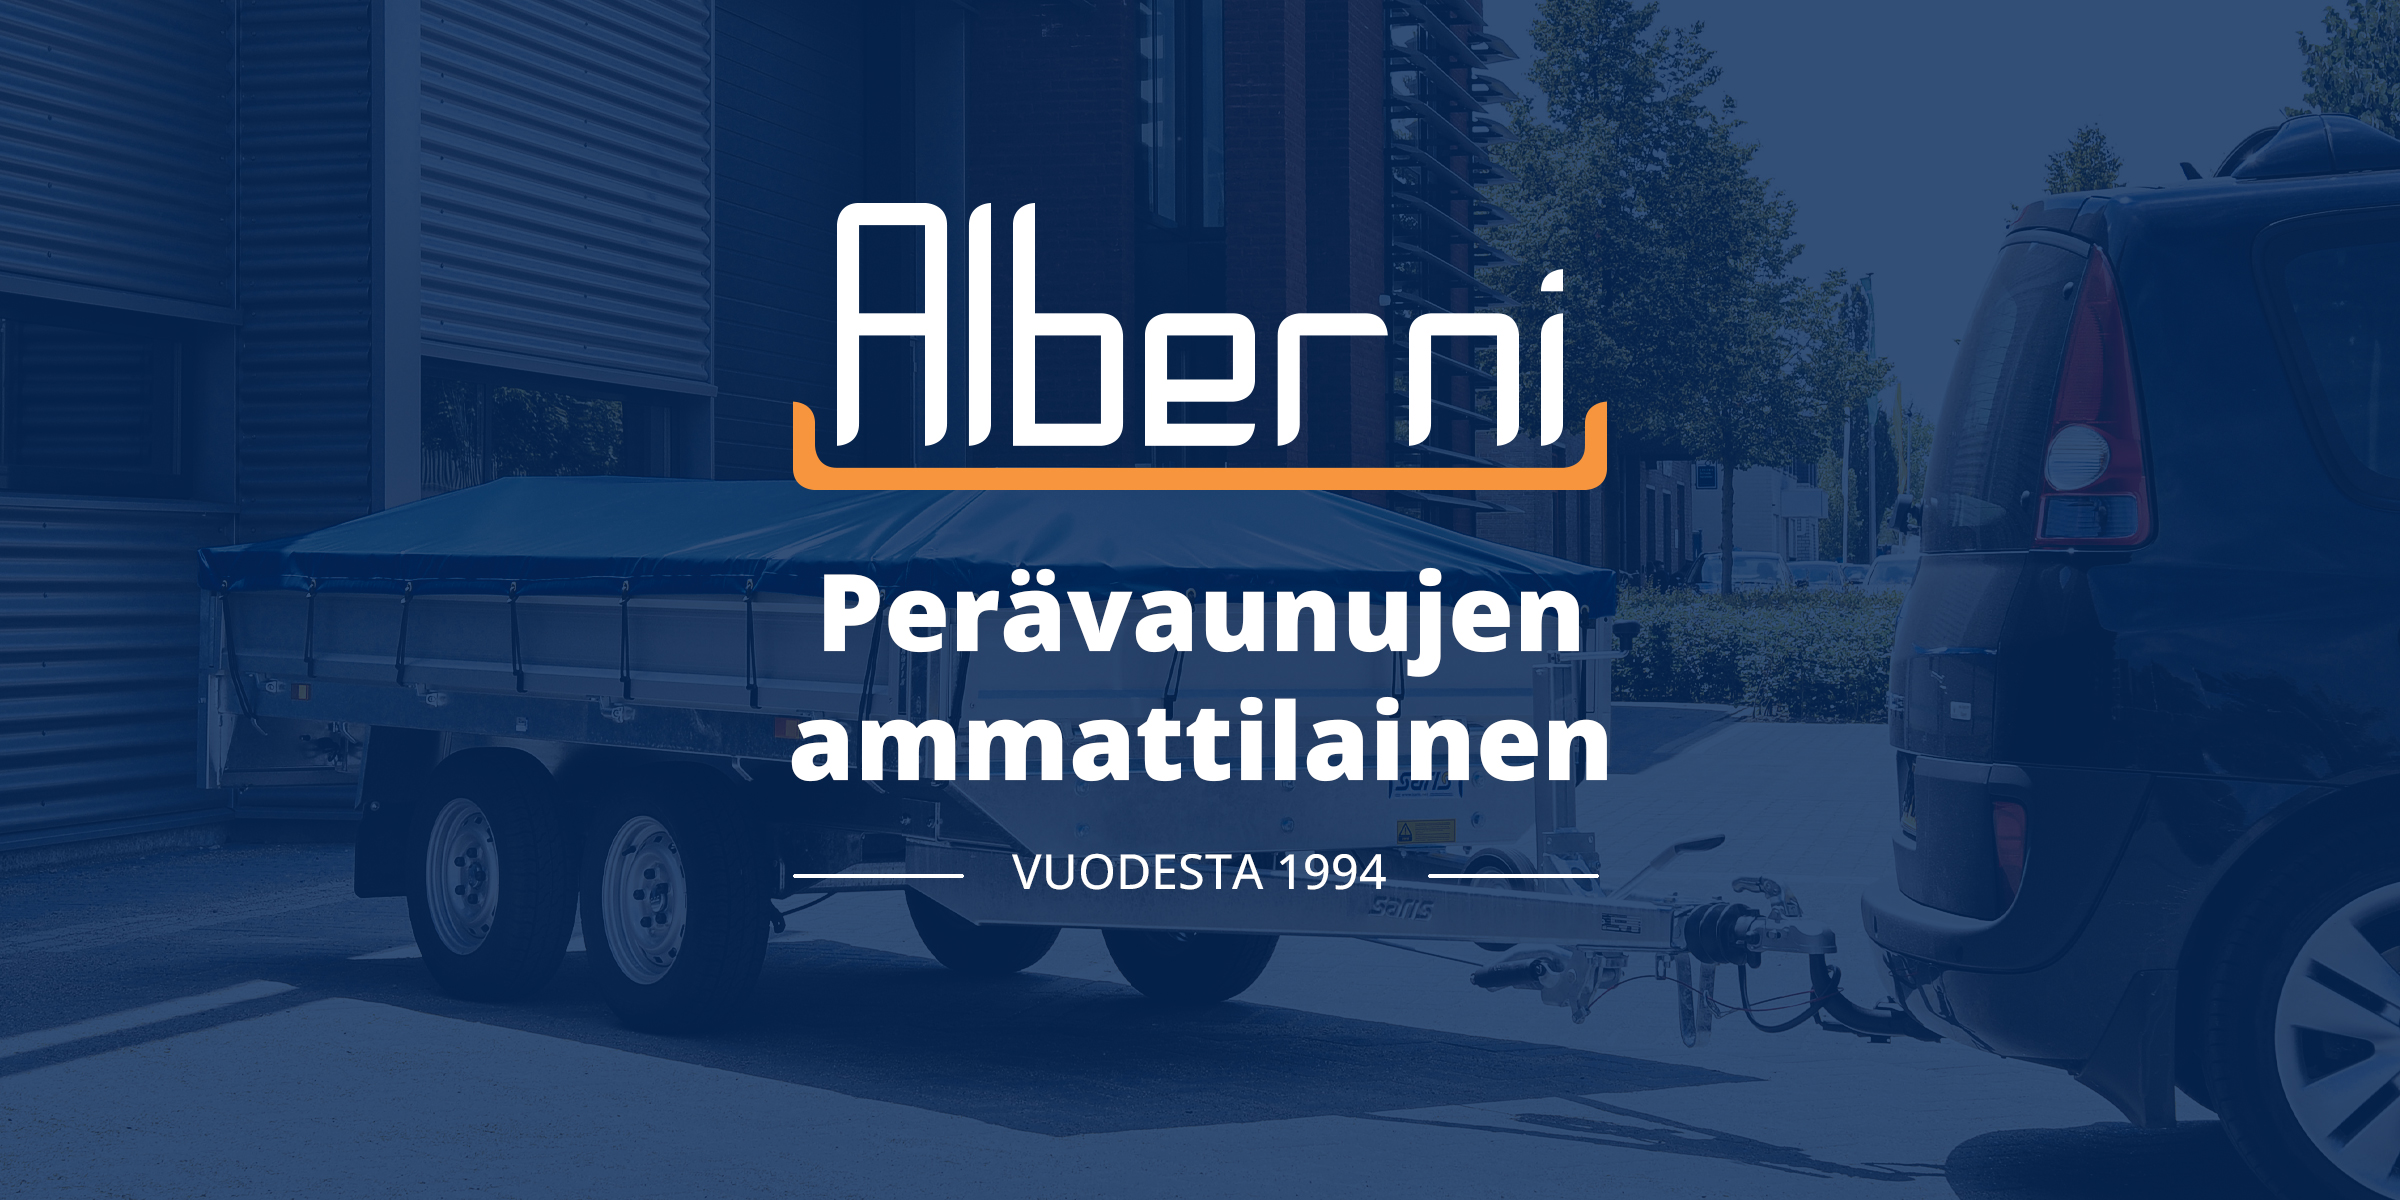 Alberni - Vuodesta 1994